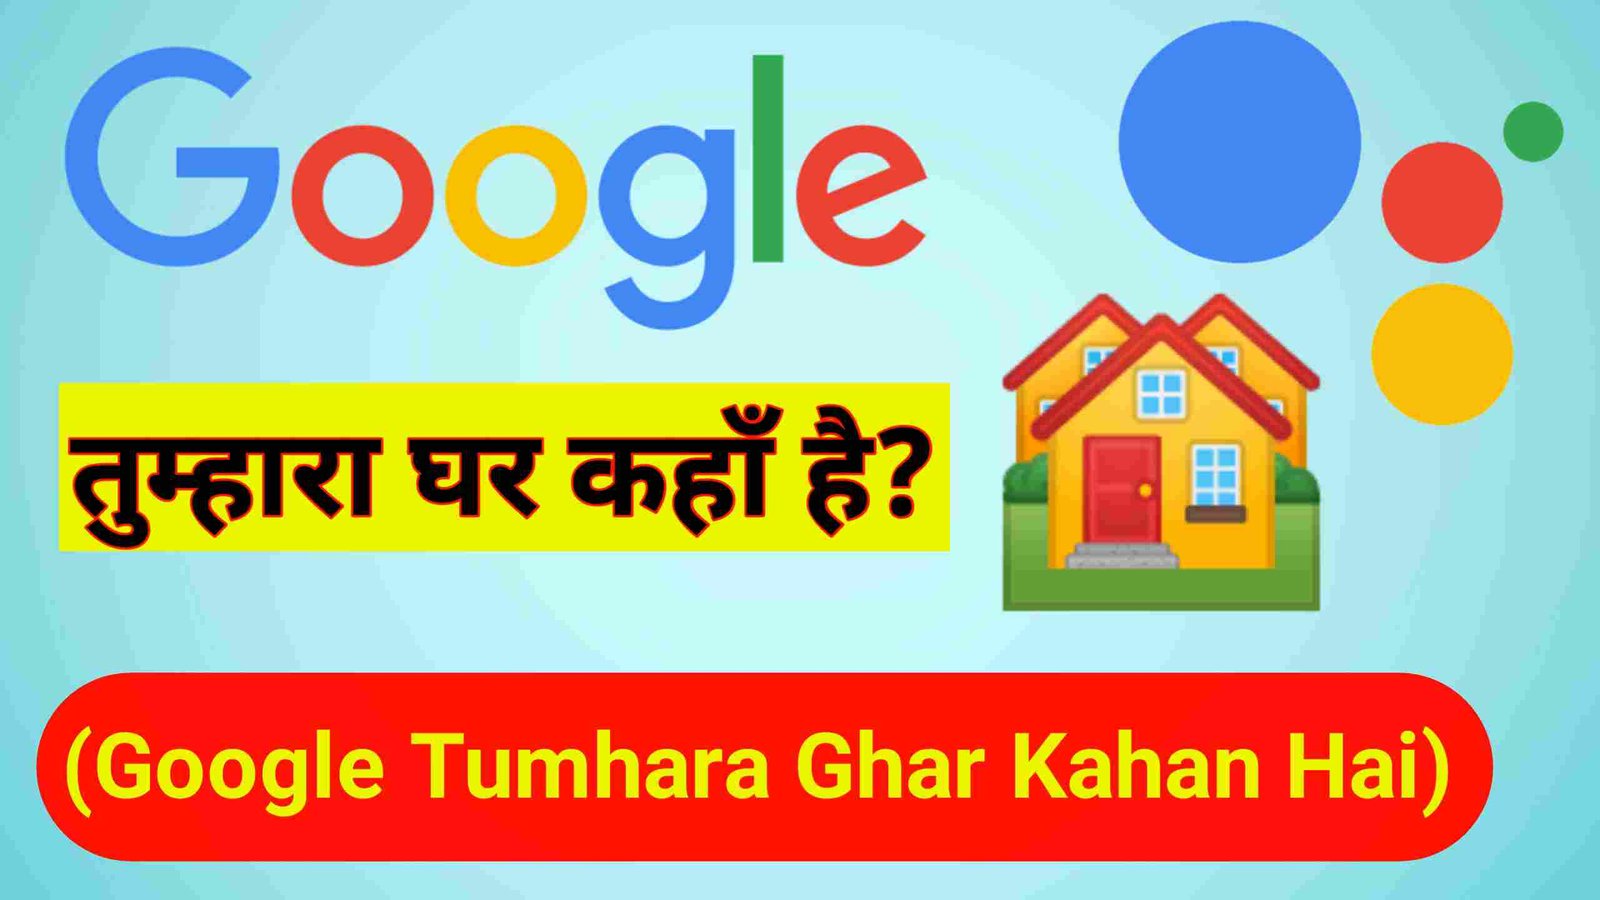 Google Tumhara Ghar Kahan Hai | गूगल तुम्हारा घर कहाँ है?